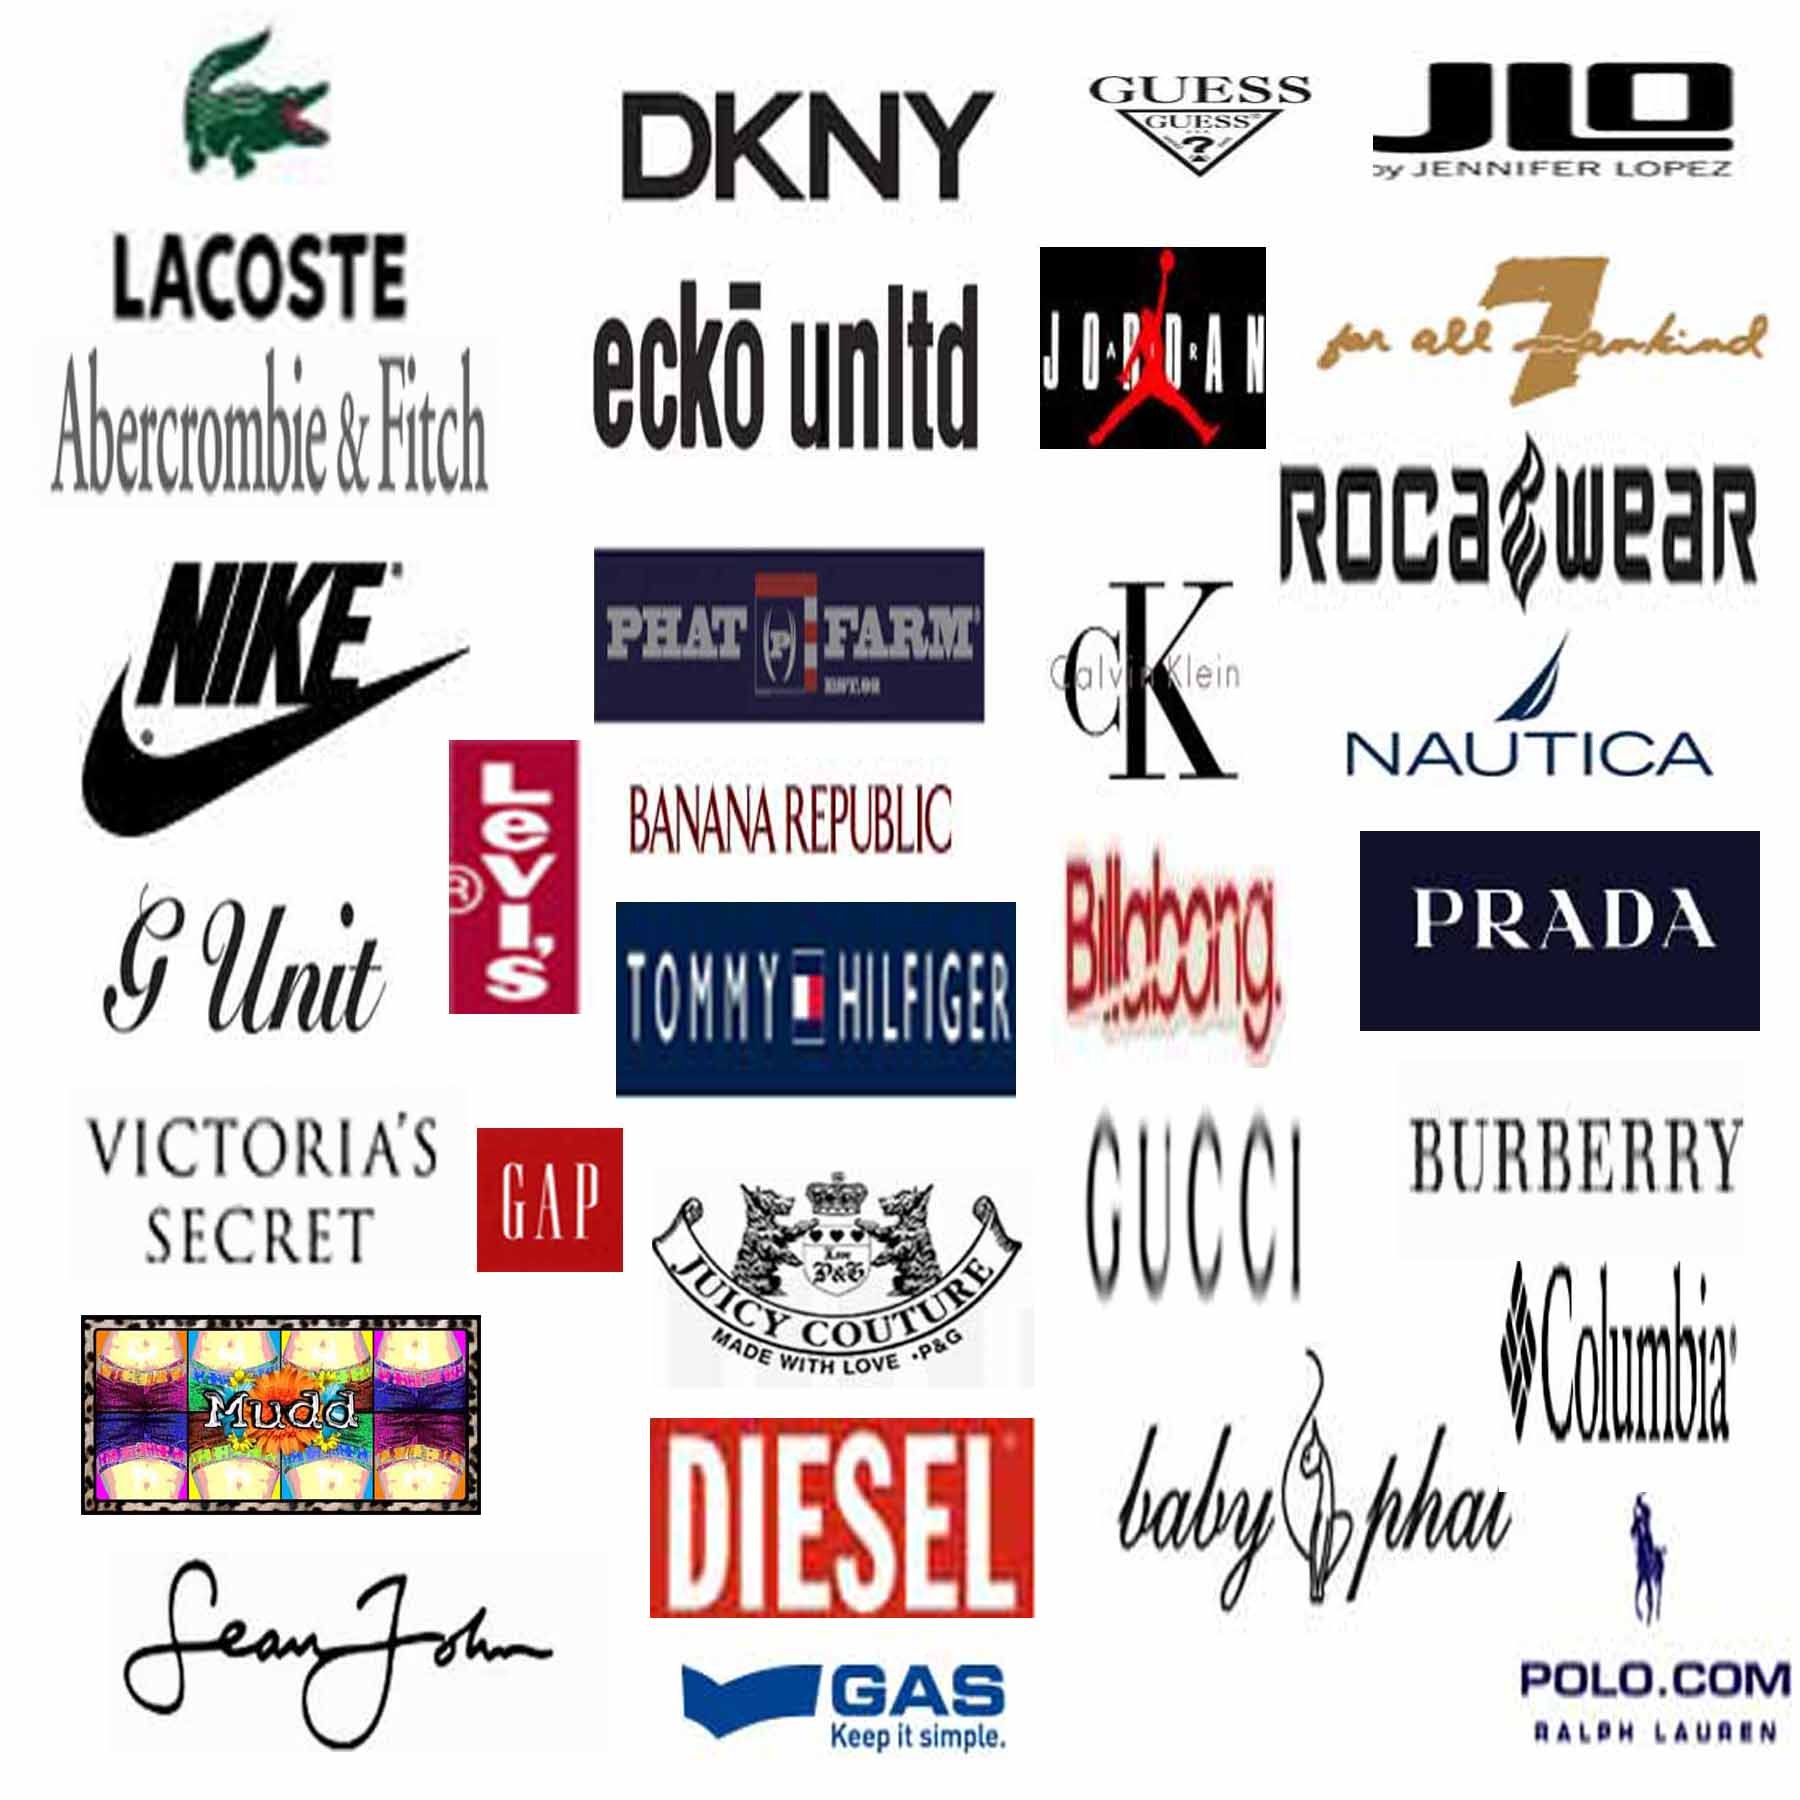 Название фирмы обуви. Фирмы одежды. Брендовые эмблемы. Марки одежды. Эмблемы марок одежды.